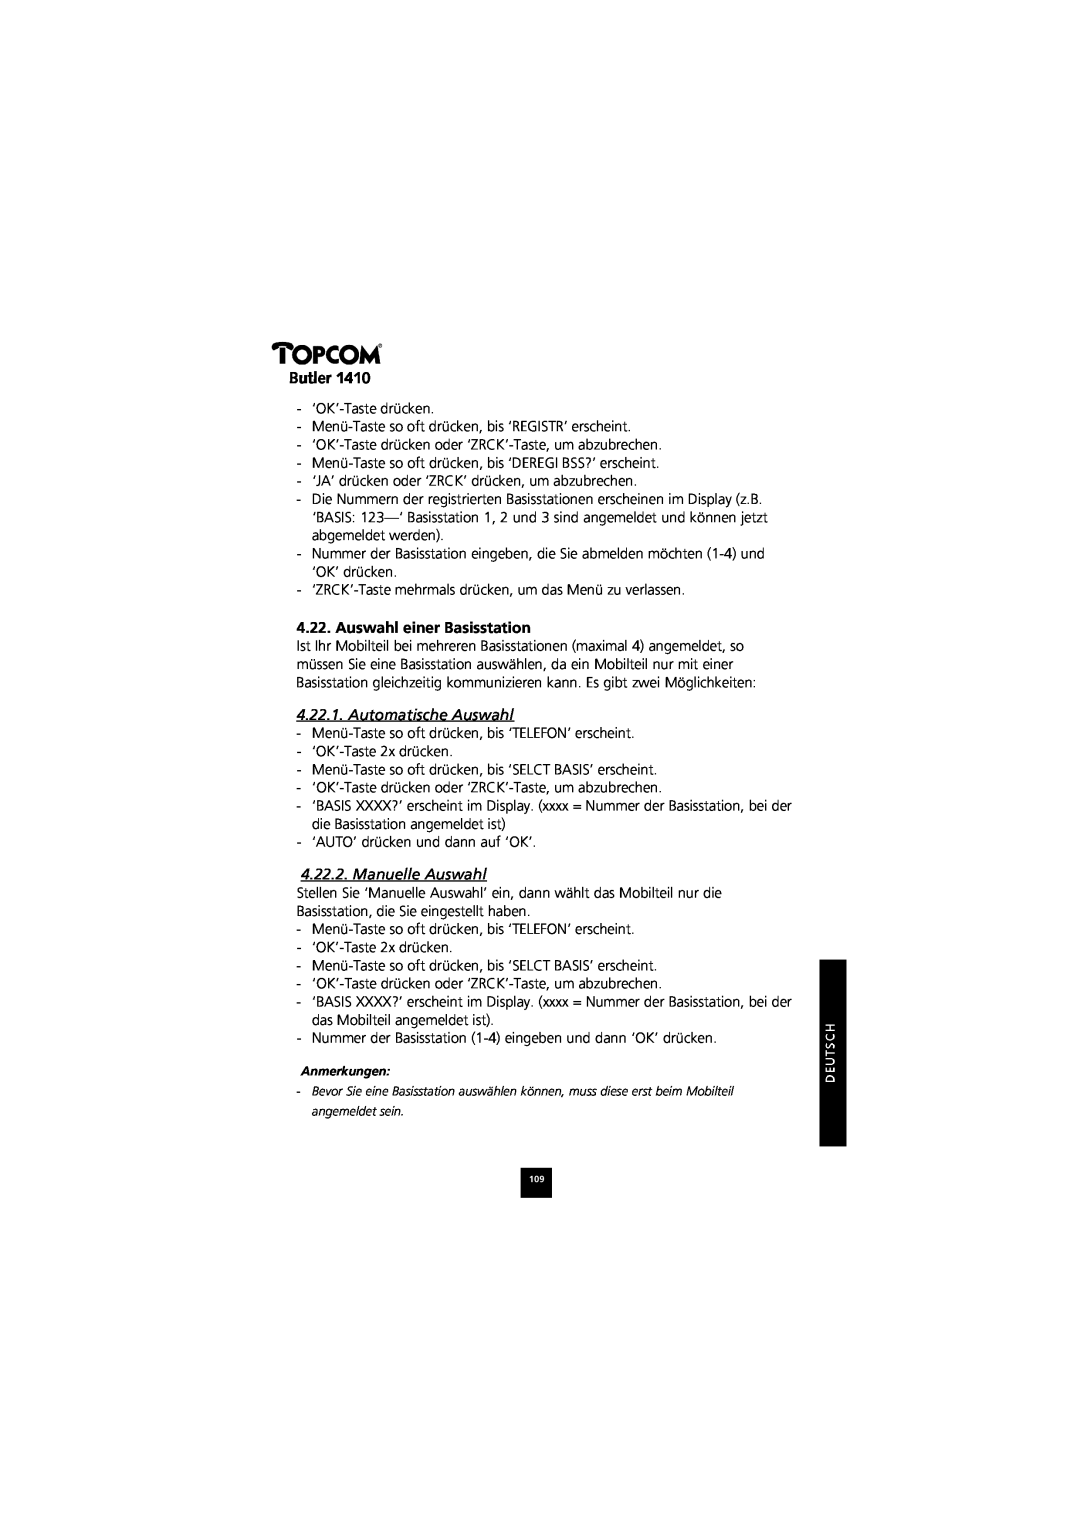 Topcom 1410 manual Auswahl einer Basisstation, Automatische Auswahl, Manuelle Auswahl, Butler 